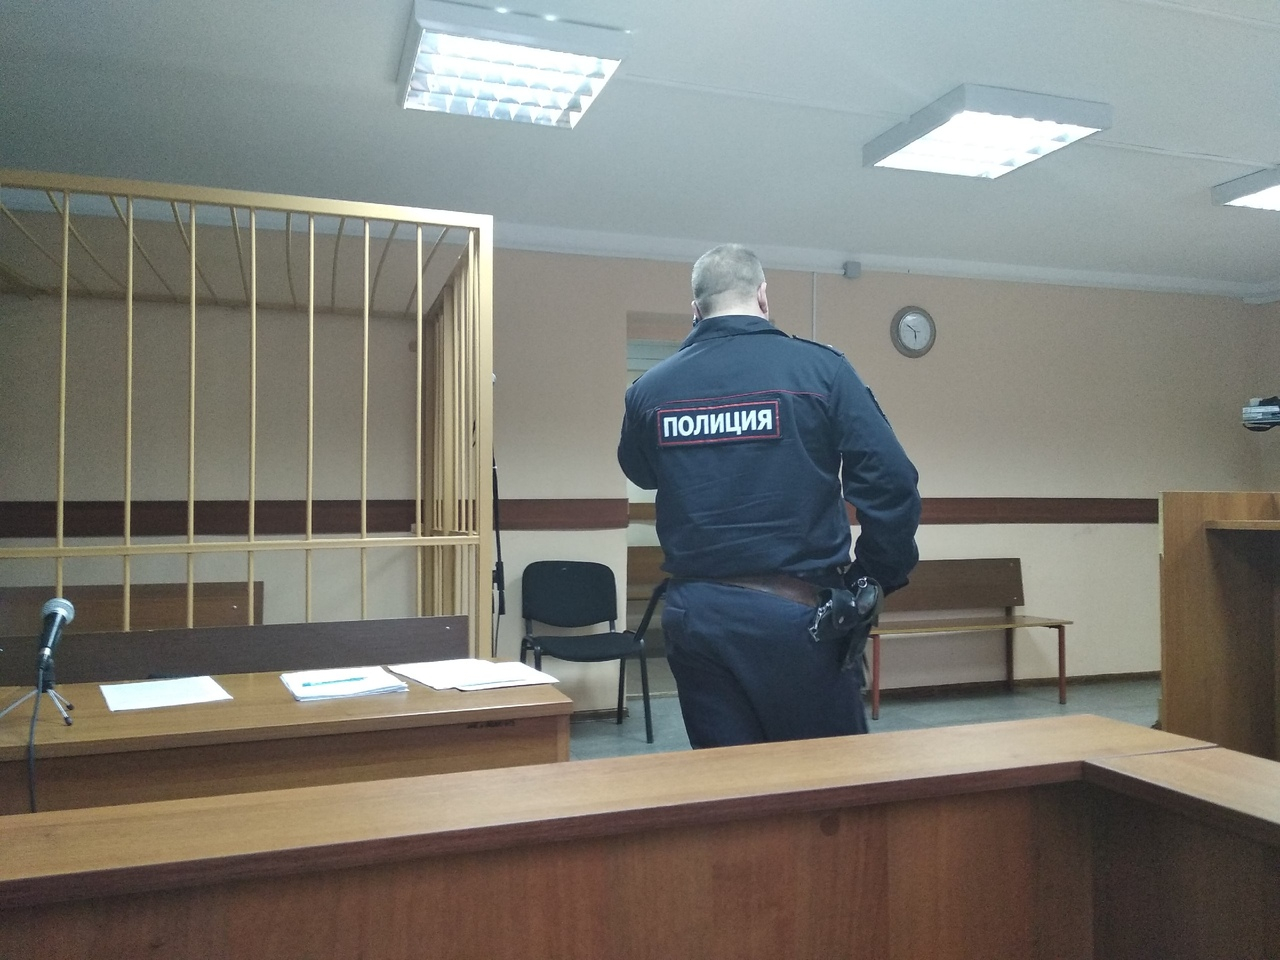 Пациентов психбольницы кормил сомнительной кашей: в Ярославле осудили директора комбината